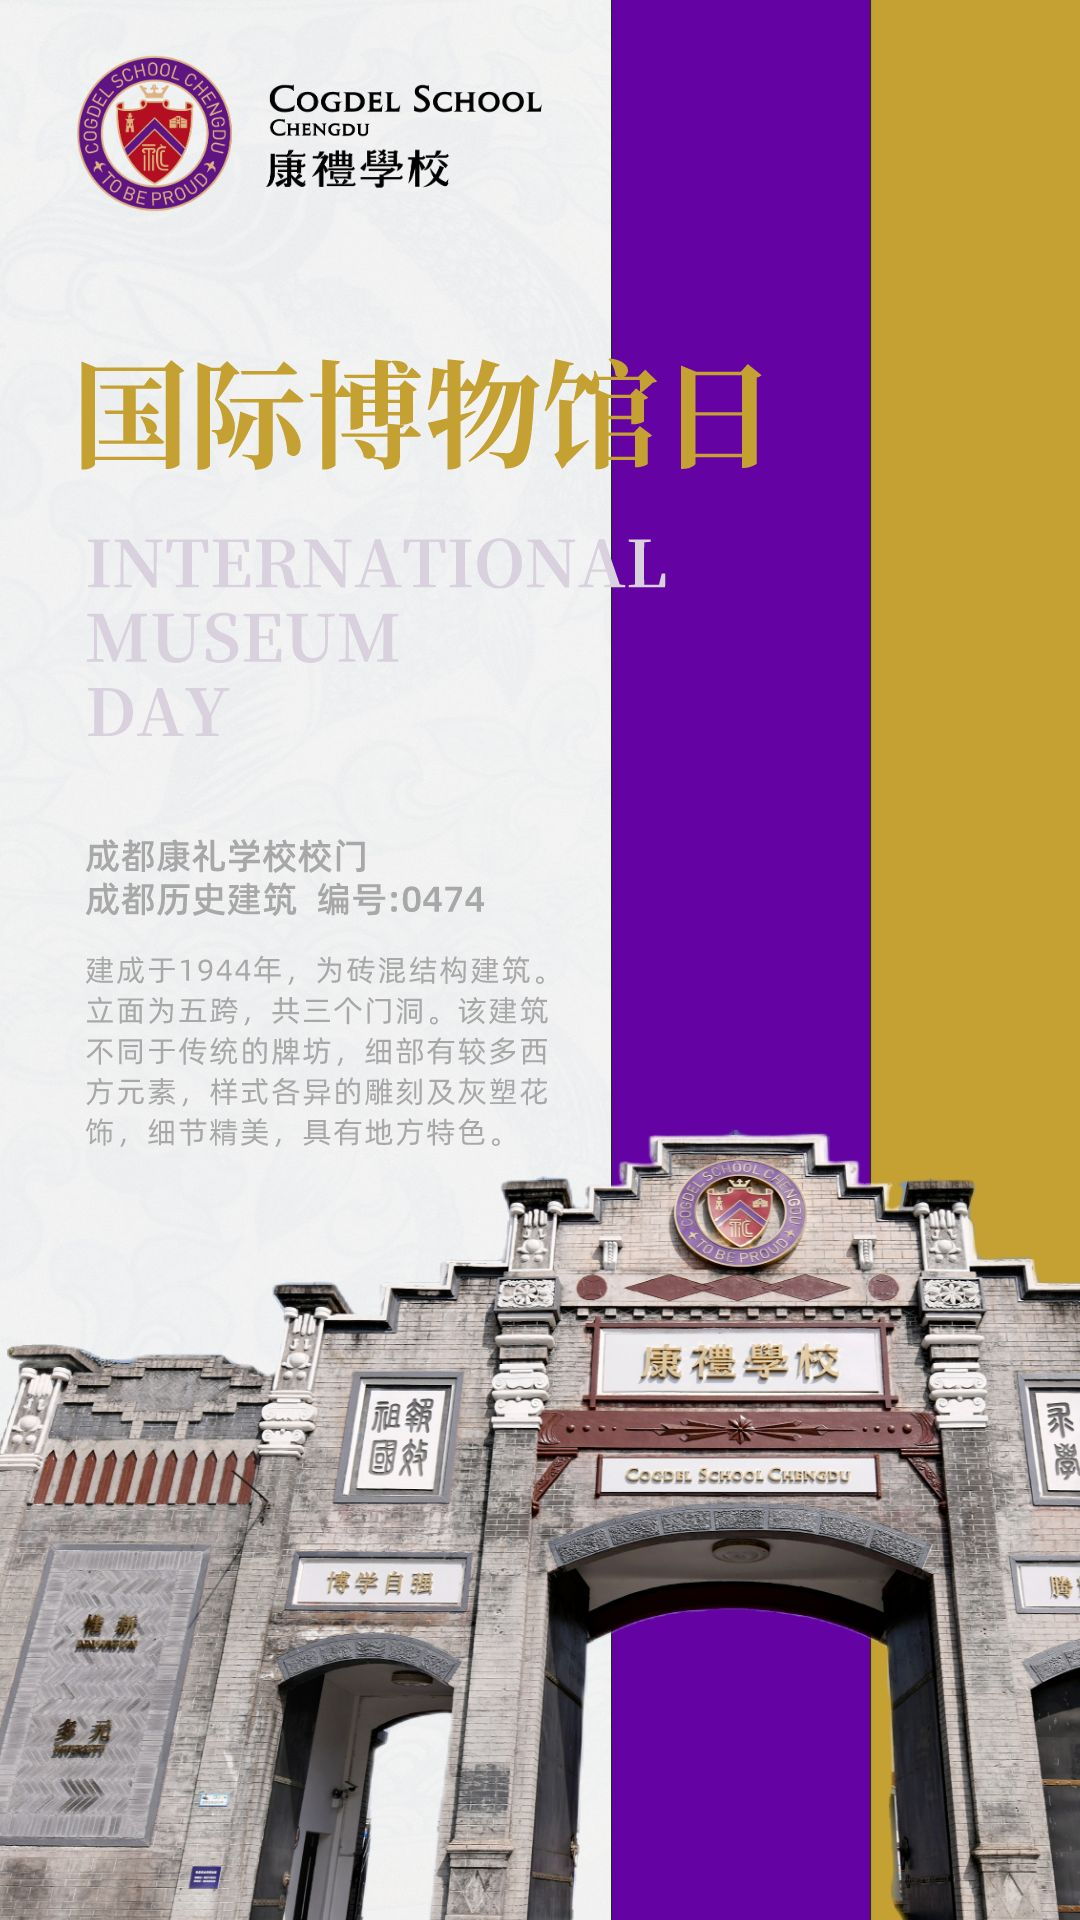 【博物馆课程】在博物馆小镇里，每天都是“博物馆日”